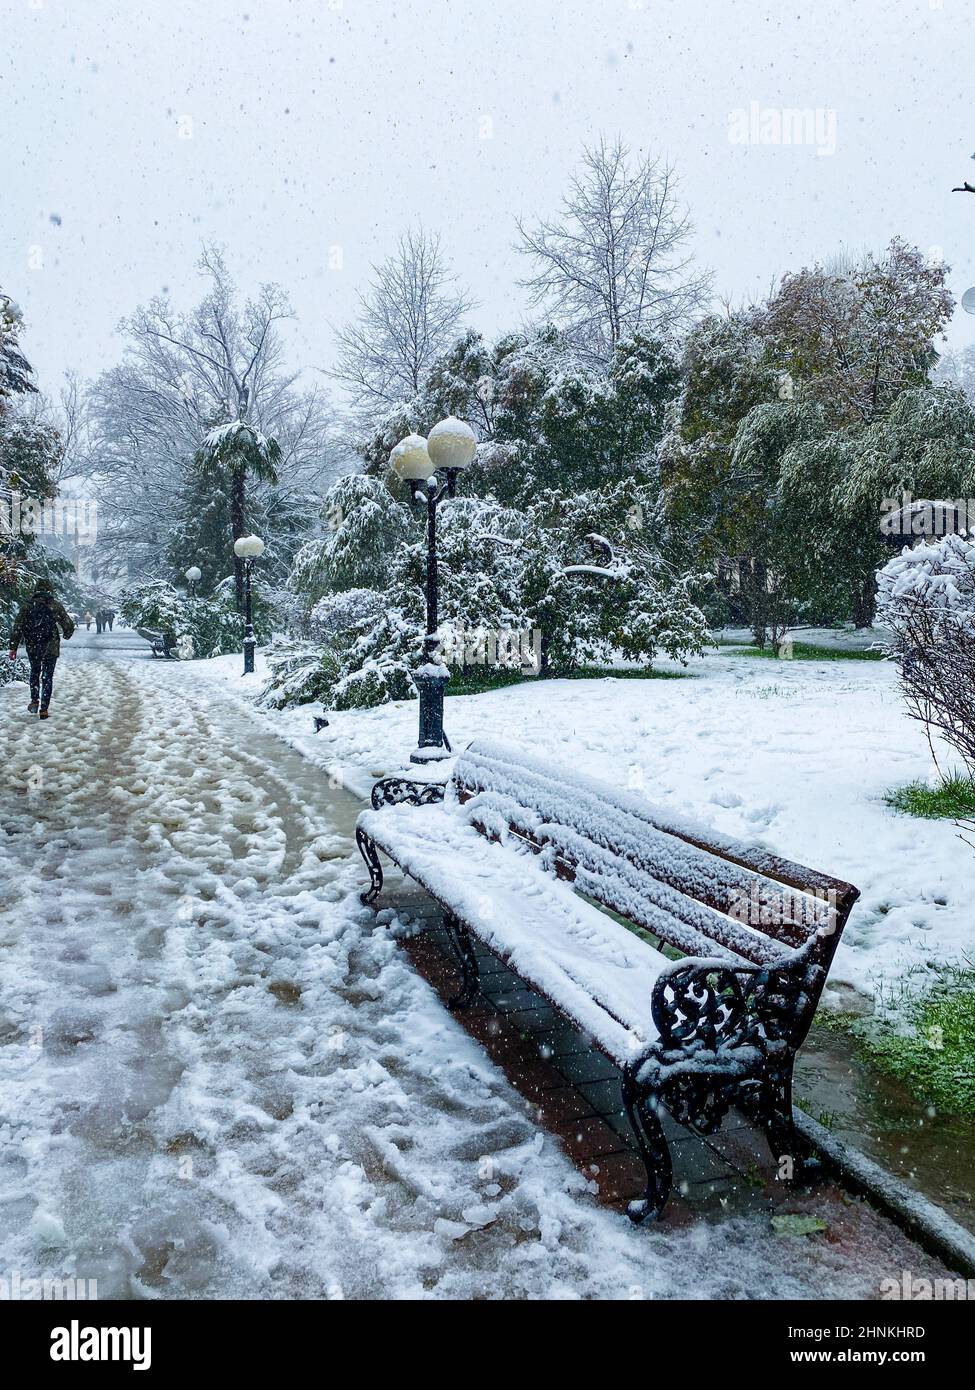 Rues de la ville en hiver.Palmiers dans la neige.Russie, Sotchi. Banque D'Images